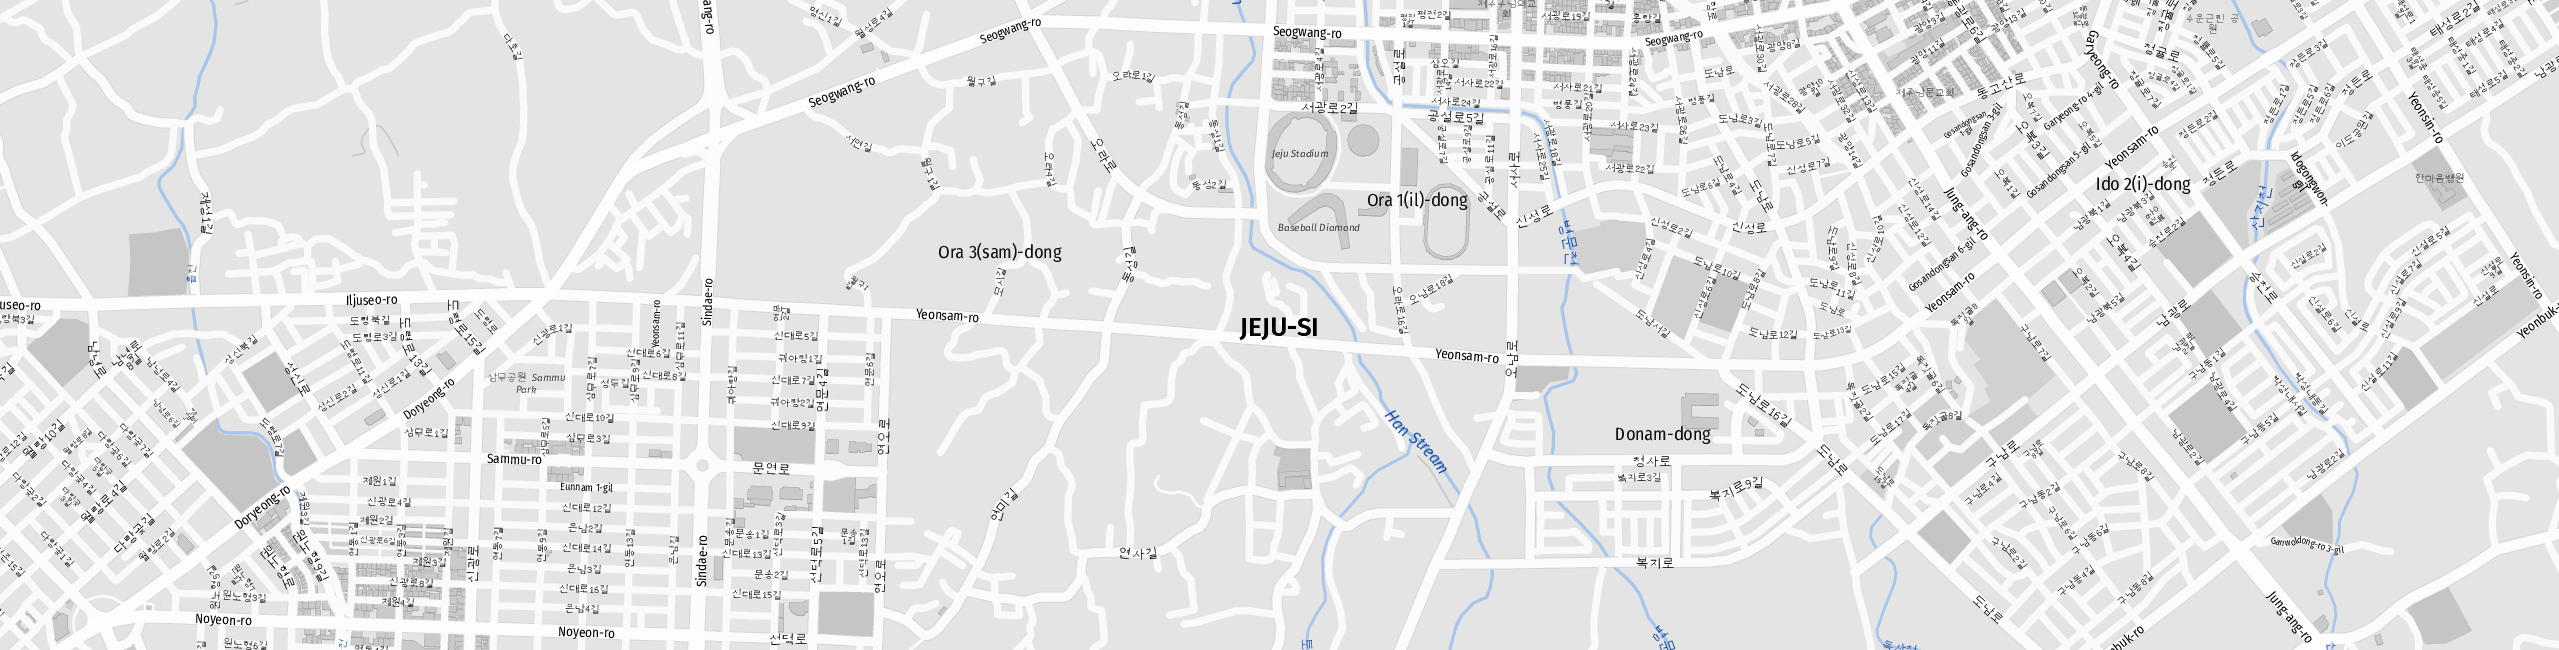 Stadtplan Jeju-si zum Downloaden.